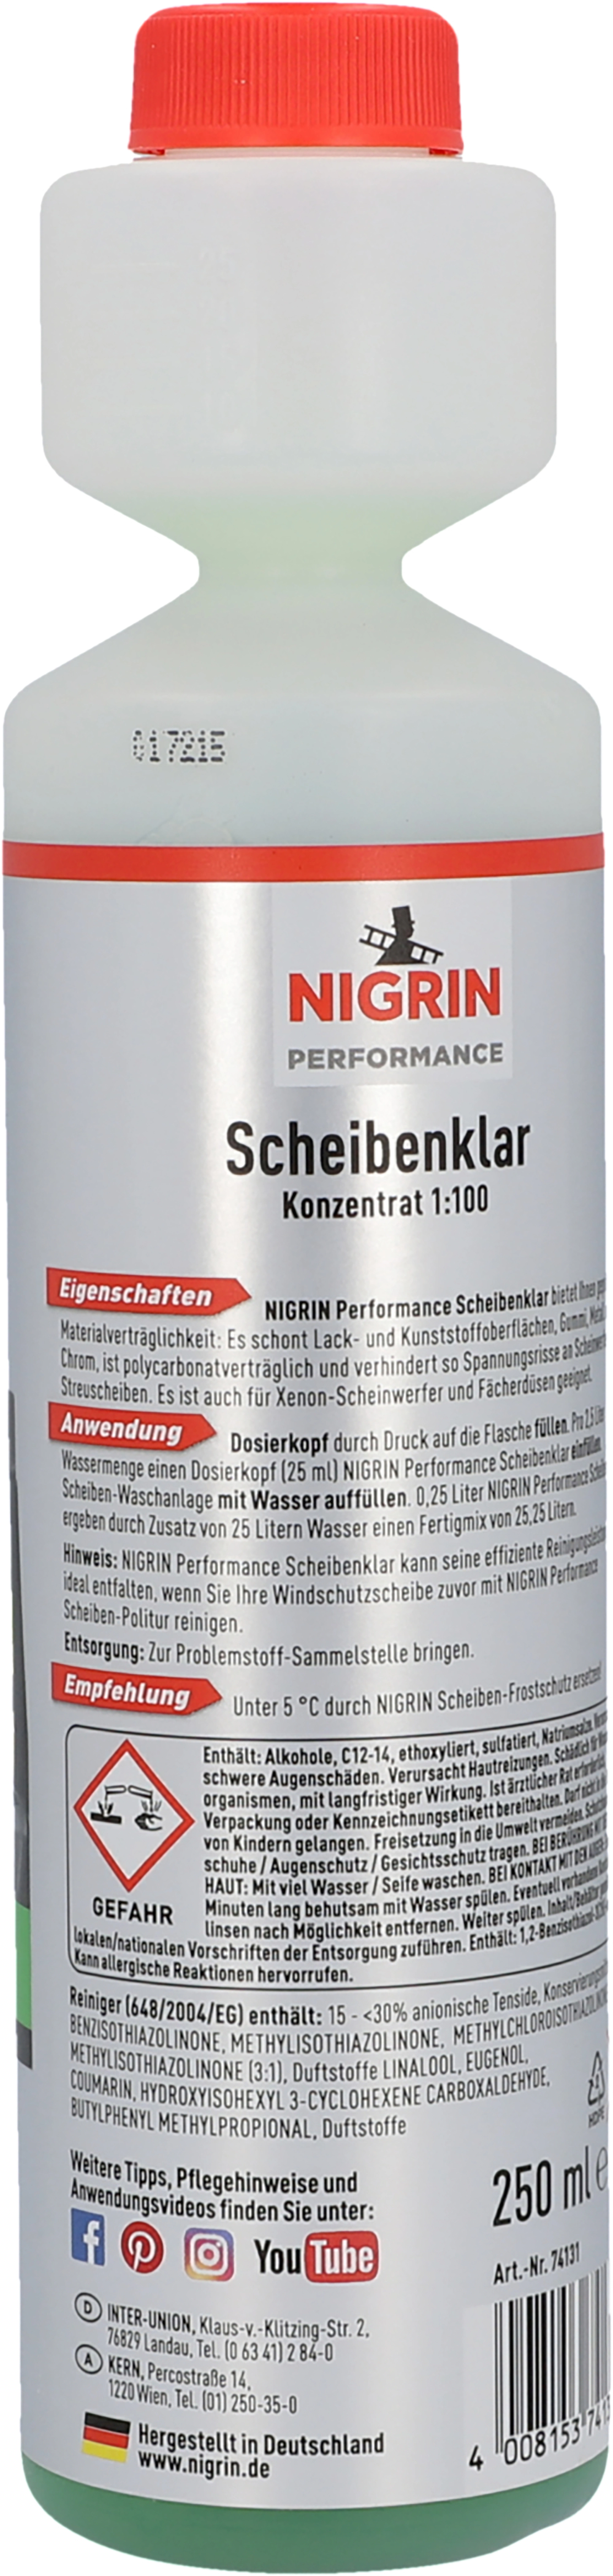 Kerndl 50508 Scheiben-Frostschutz Scheibenwaschanlage 5 l -30 °C kaufen